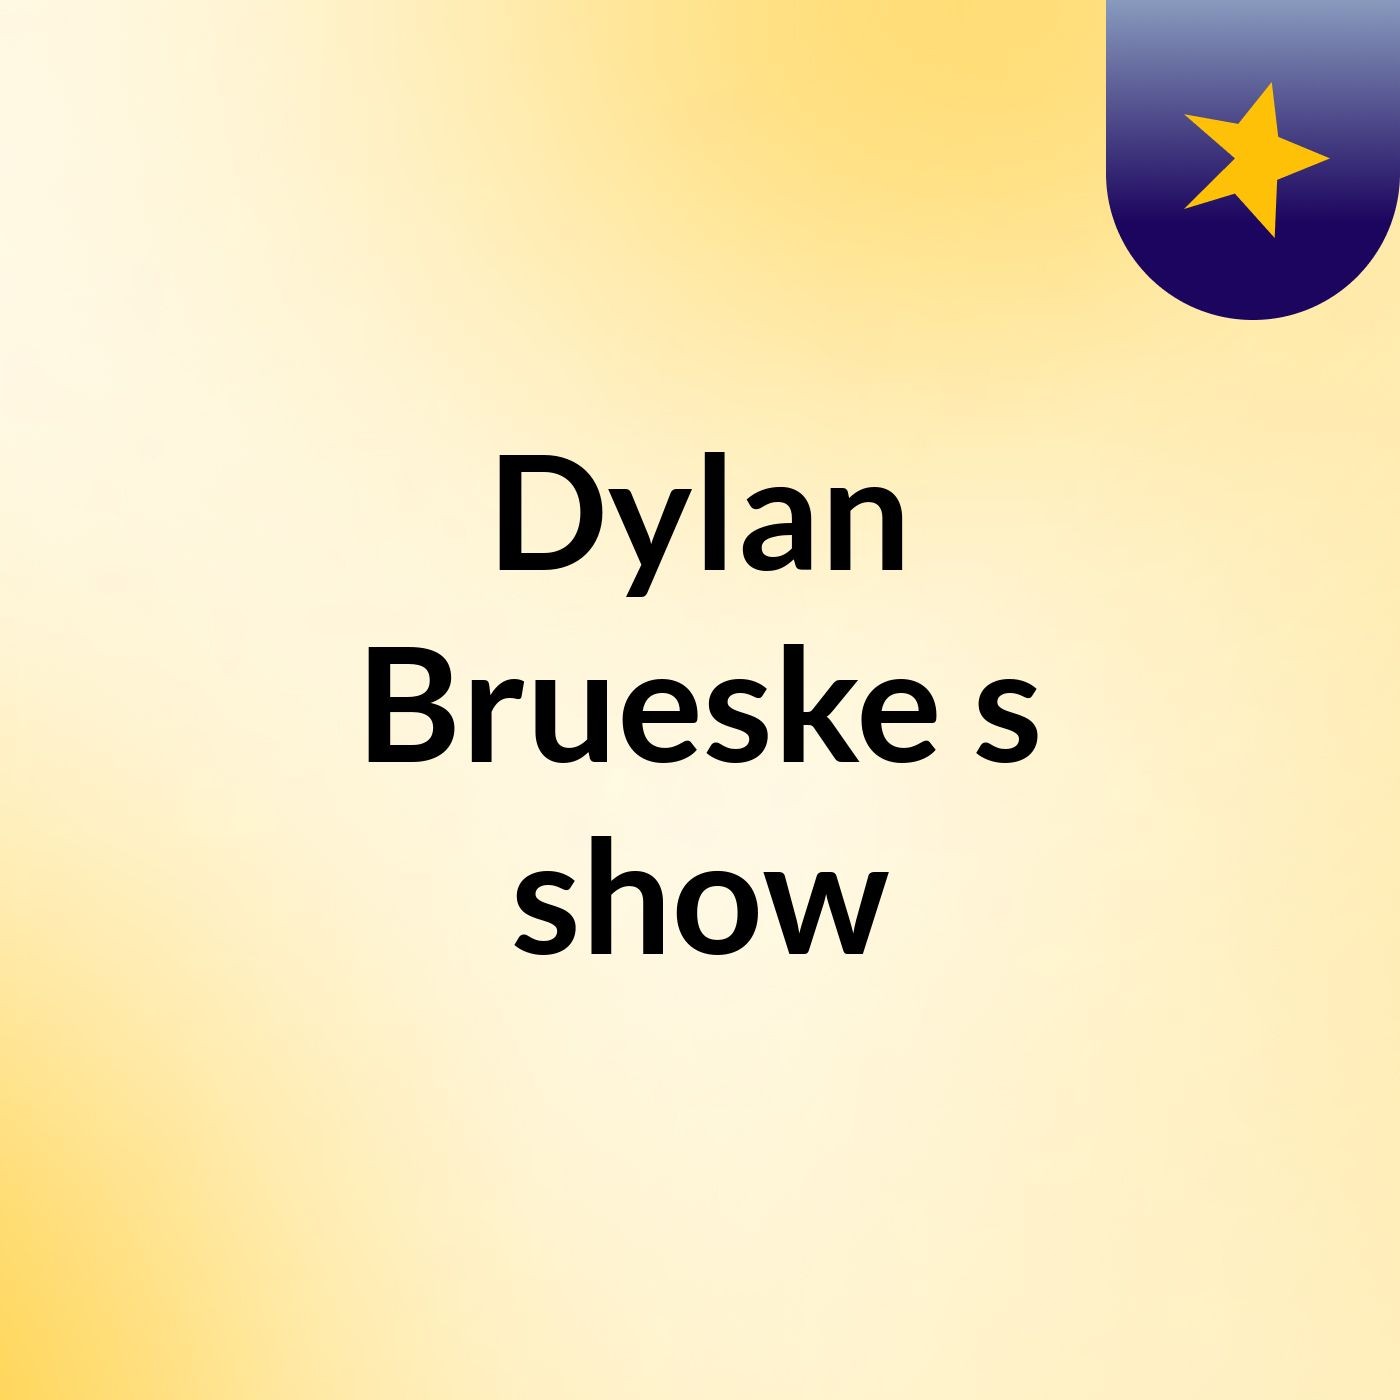 Dylan Brueske's show